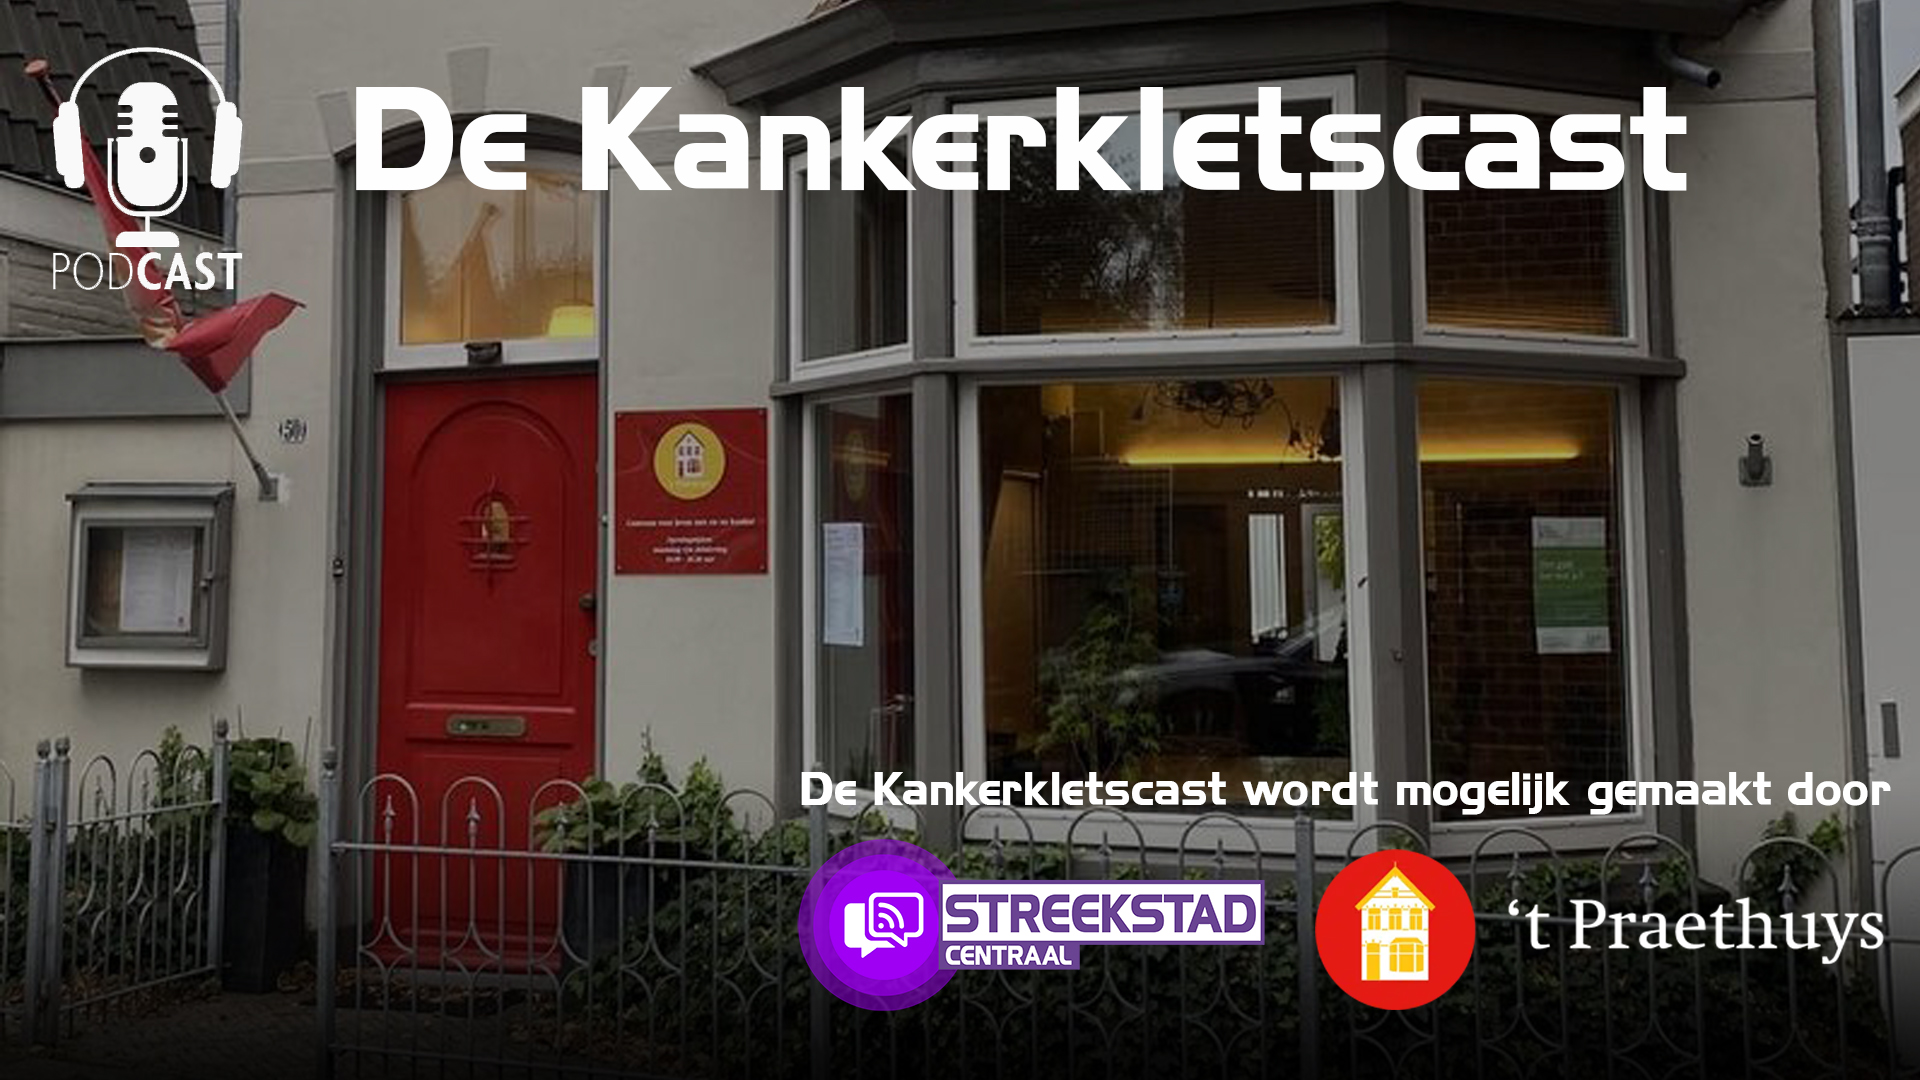 Saskia van der Hoek aan het woord in De Kankerkletscast (S01A06)